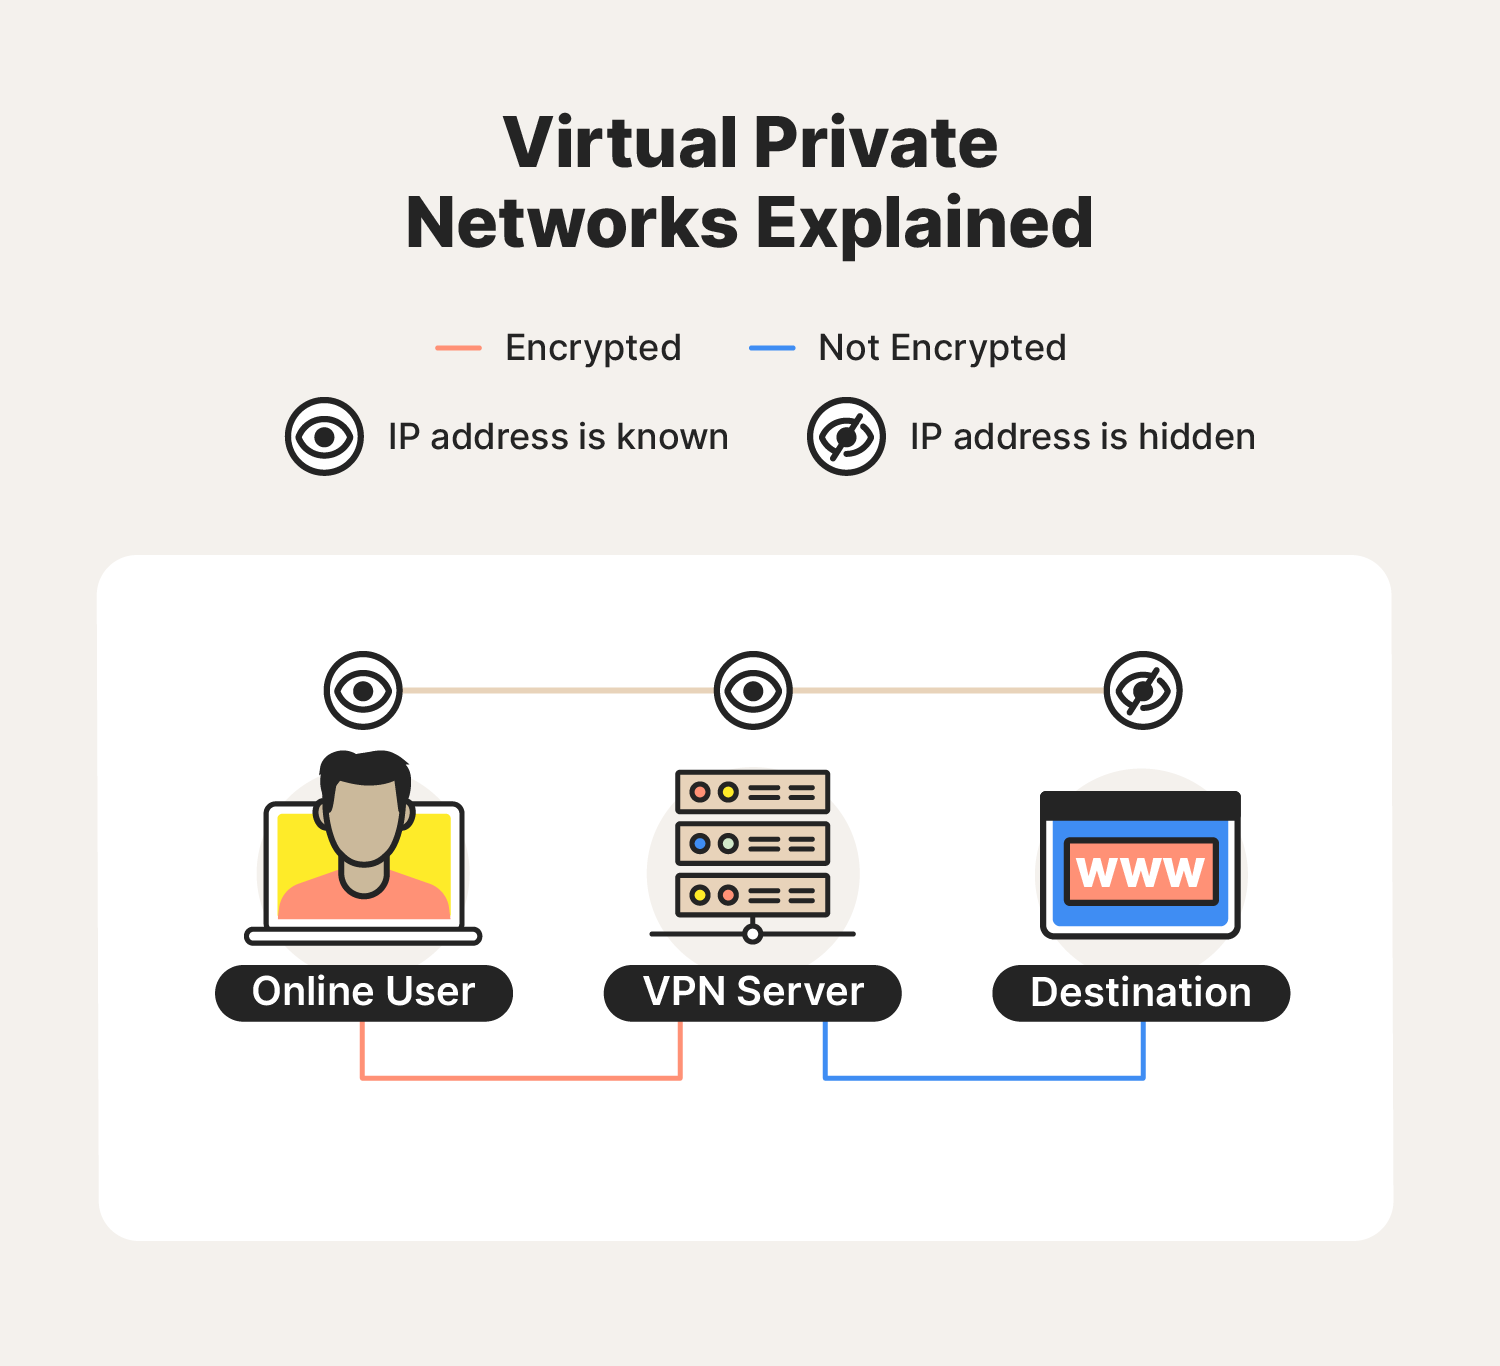 يشرح الرسم كيف تعمل الشبكات الخاصة الافتراضية ، مع تسليط الضوء على اختلاف رئيسي بين شبكات TOR مقابل VPN